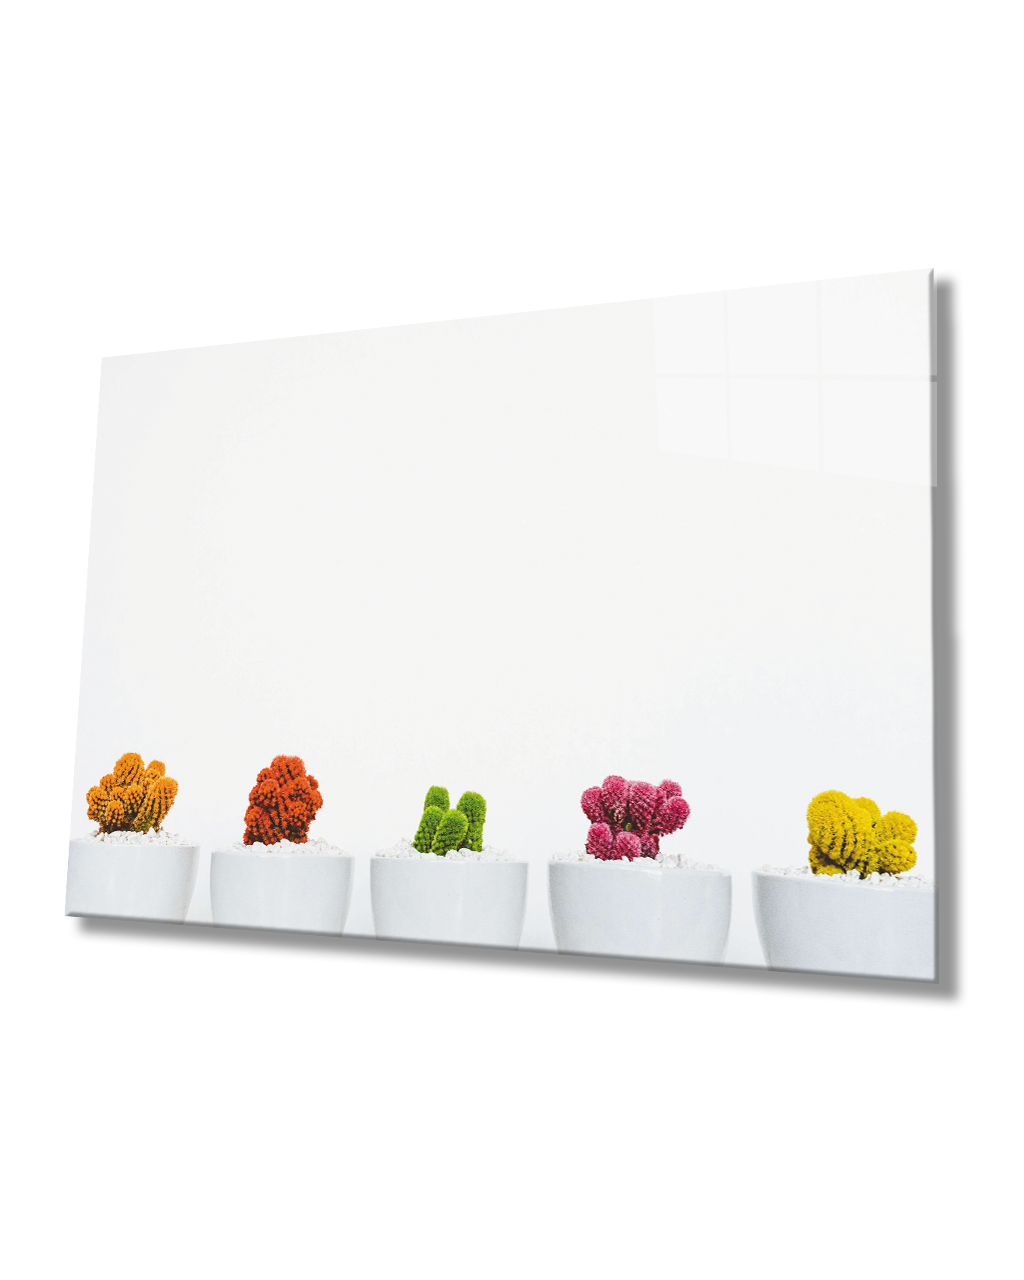 Beyaz Vazoda Kaktüs Çiçek Cam Tablo  4mm Dayanıklı Temperli CamCactus Flower Glass Table In White Vase 4mm Durable Tempered Glass